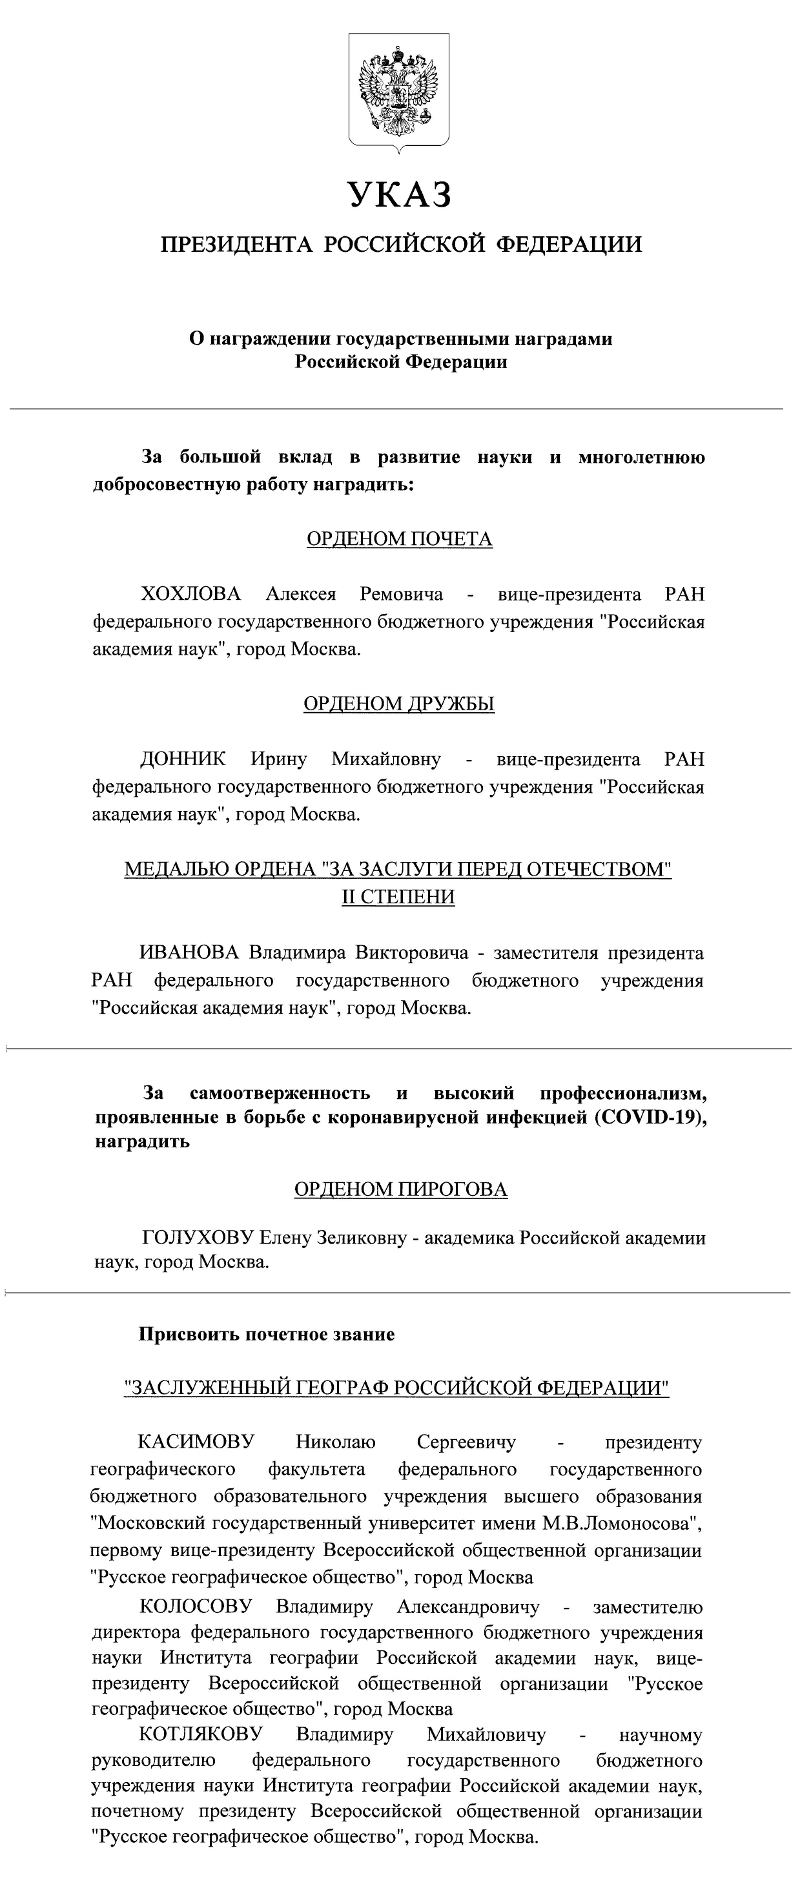 Выписка из Указа Президента Российской Федерации (jpg, 405 Kб)